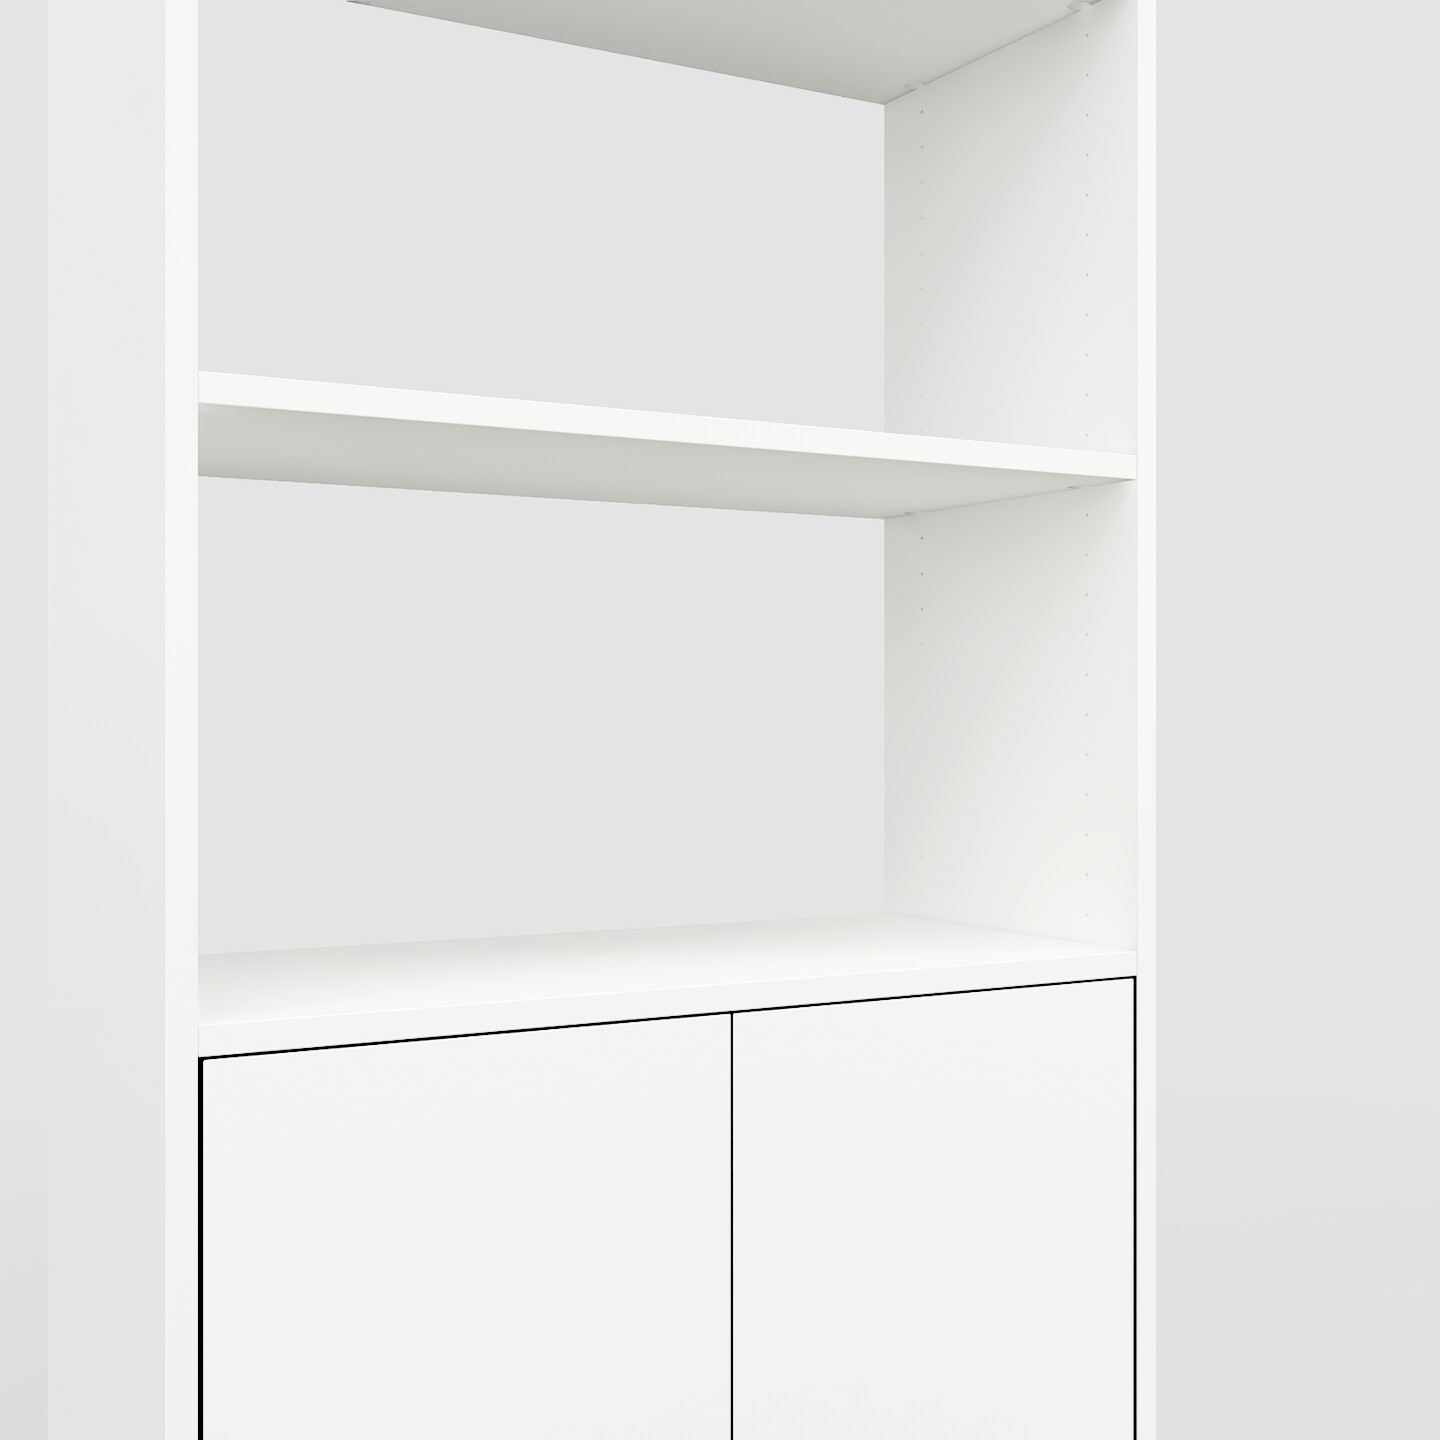 Bücherregale in Weiß designen | Regale bei MYCS Deutschland